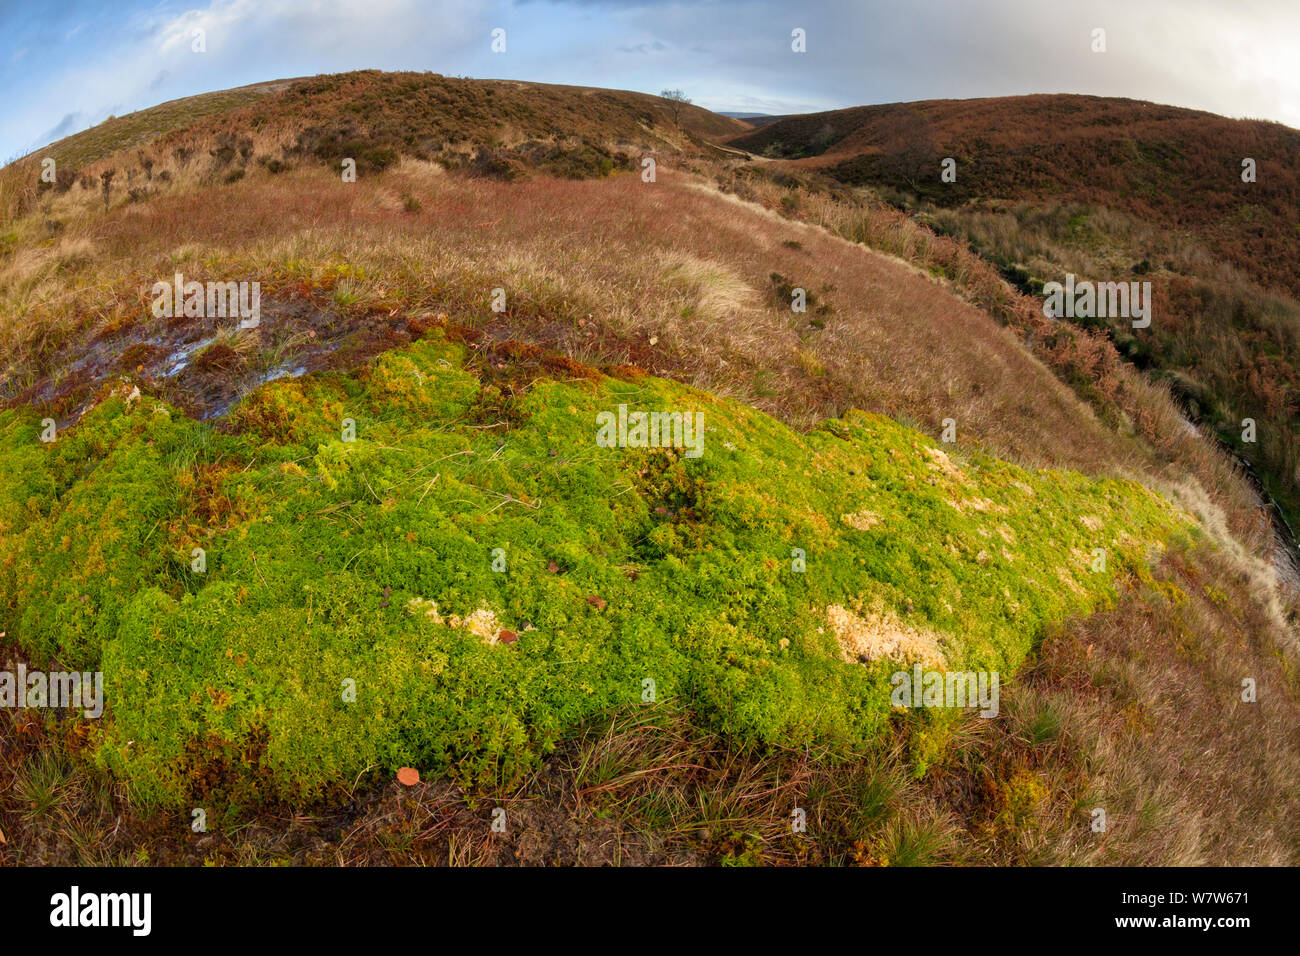 Sphagnum Moos (Sphagnum sp.) wachsen auf sumpfigen Moorlandschaft. Nationalpark Peak District, Derbyshire, UK. November. Mit Weitwinkel Objektiv aufgenommen. Stockfoto